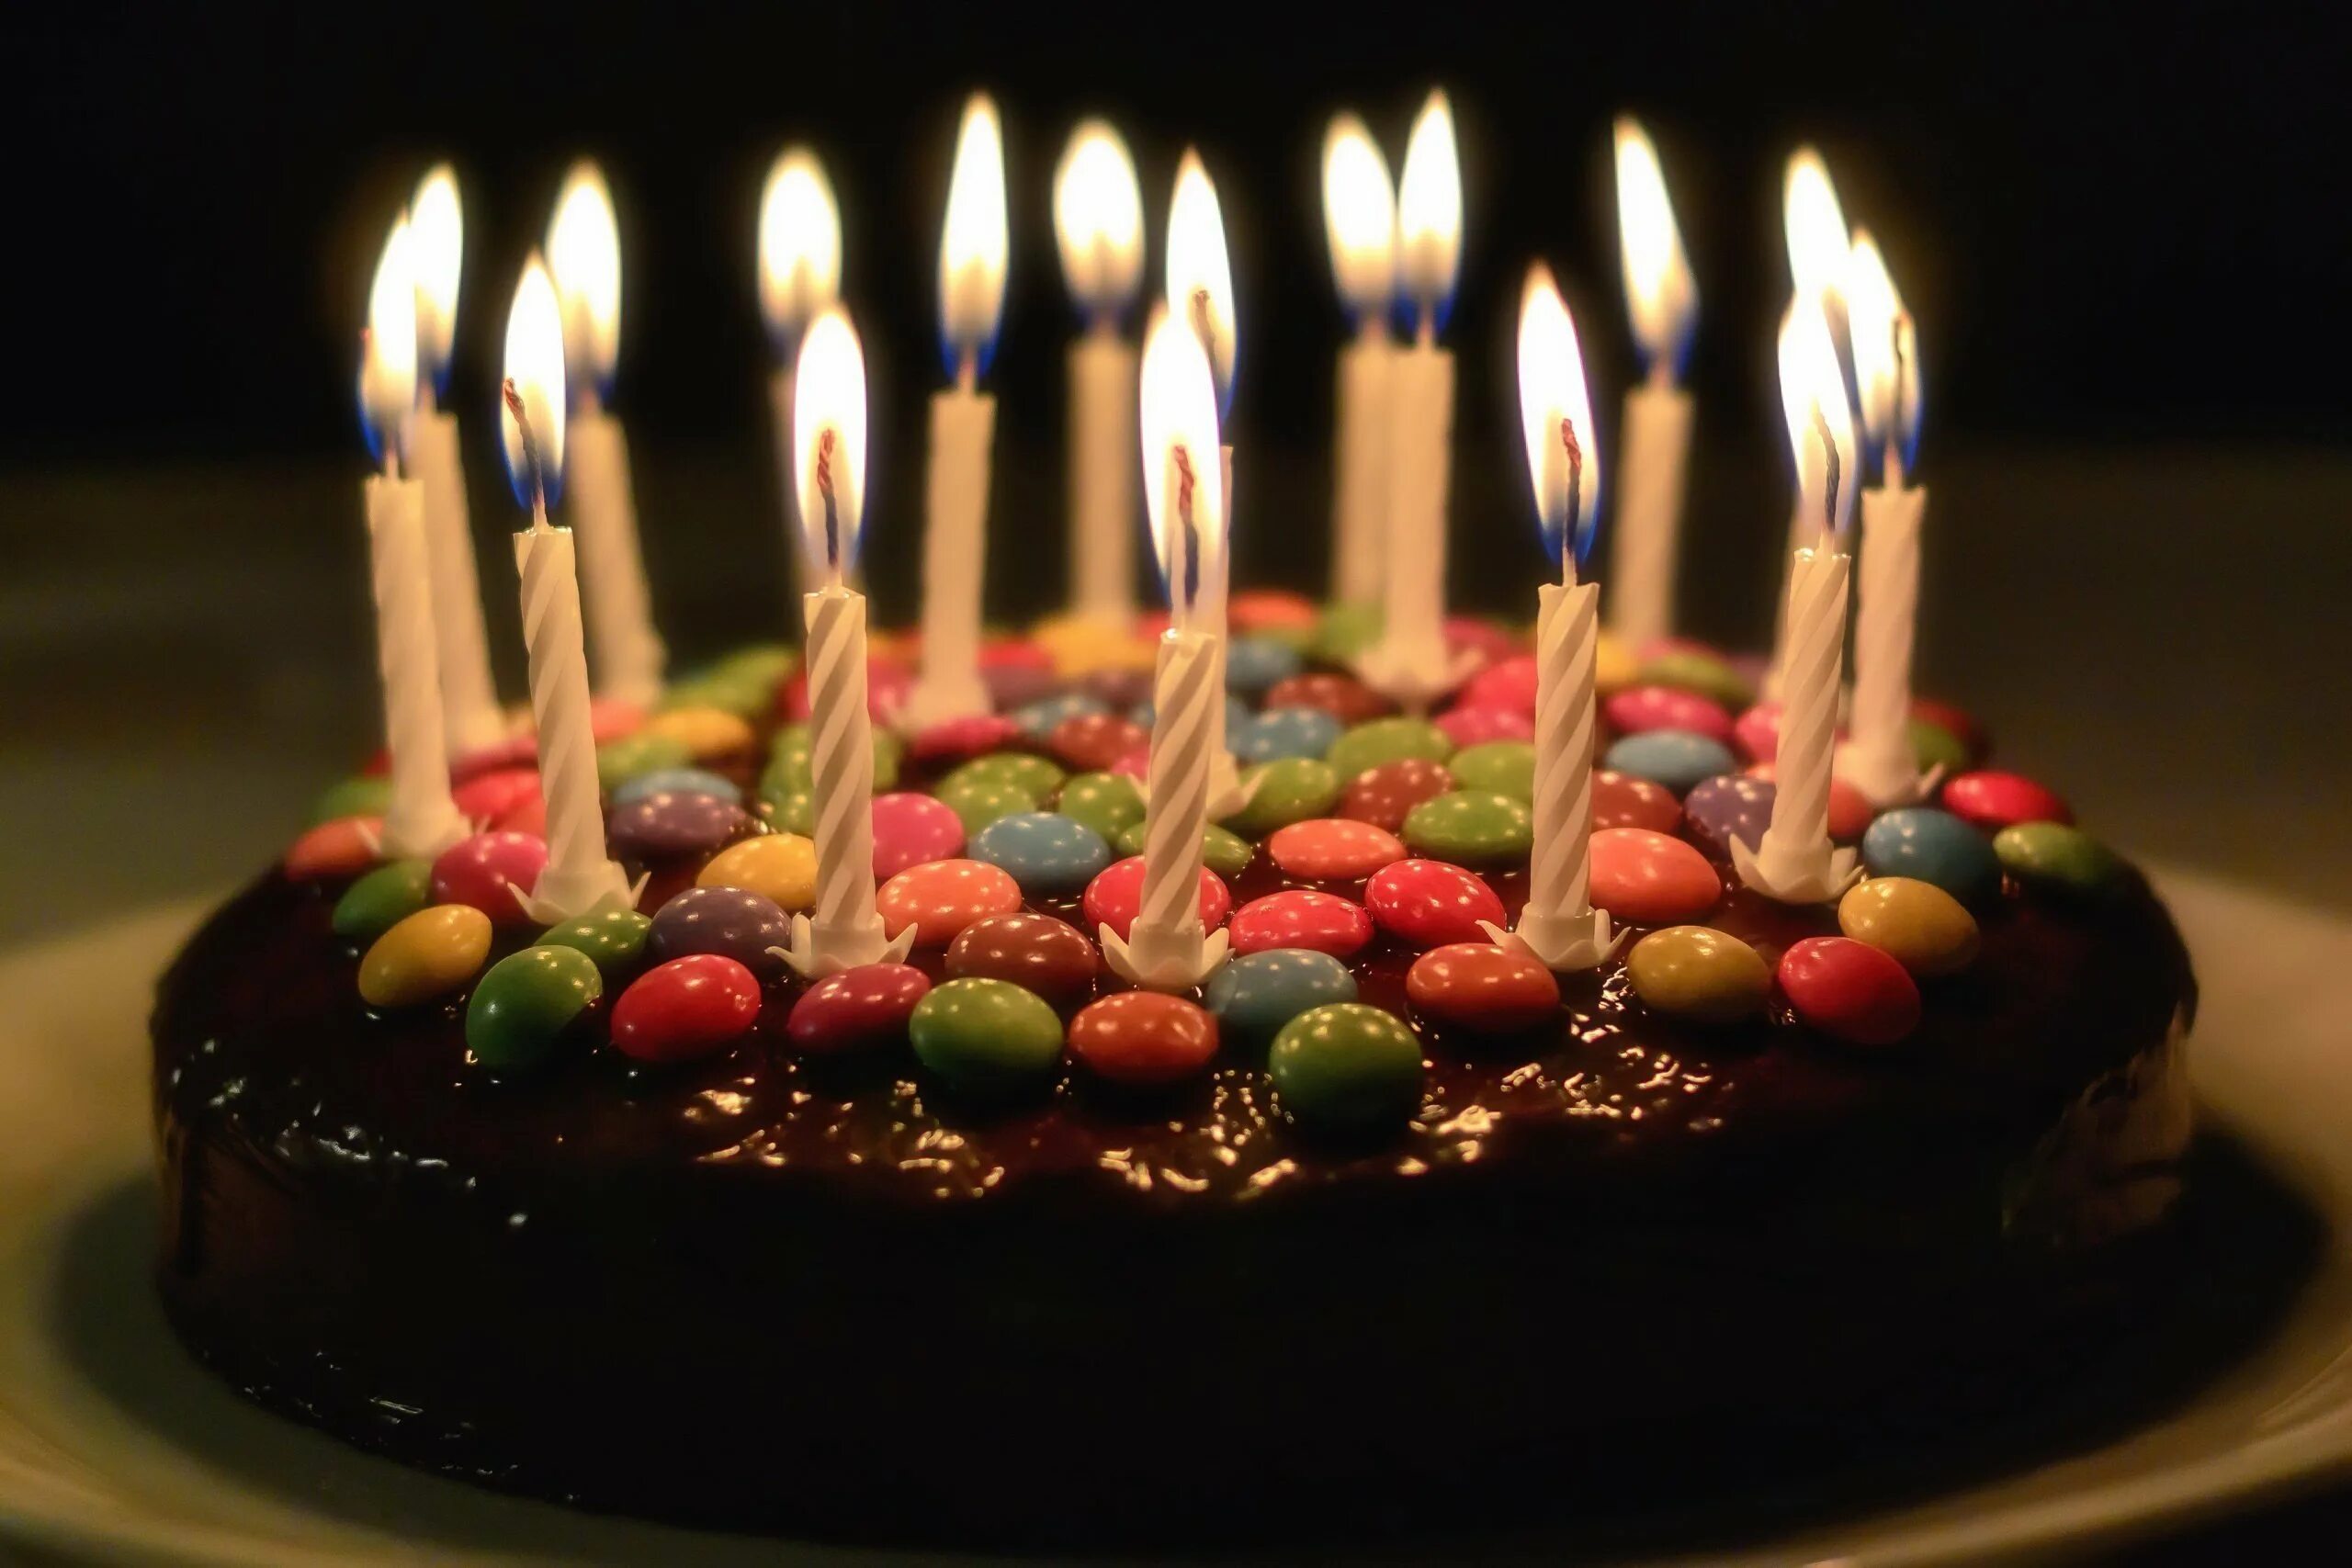 Cake candle. Праздничный торт. Свечи для торта. Тортик с днем рождения. Торт со свечками.